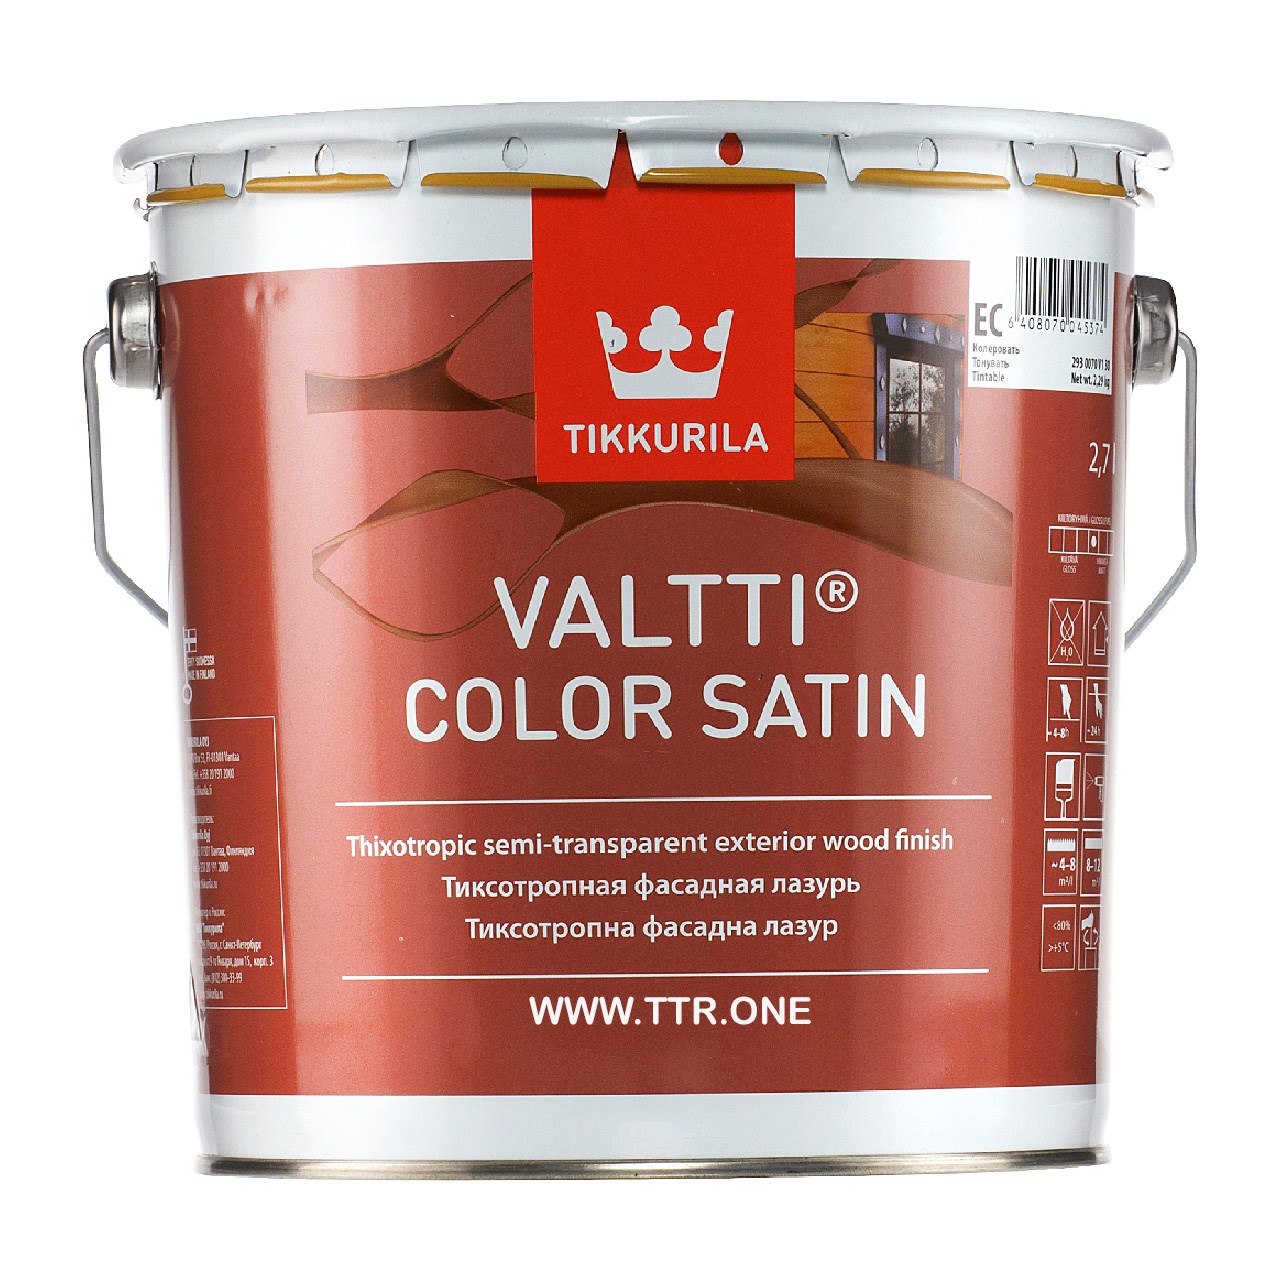 رنگ پایه روغن تیکوریلا مدل Valtti Color Satin 5070 حجم 3 لیتر